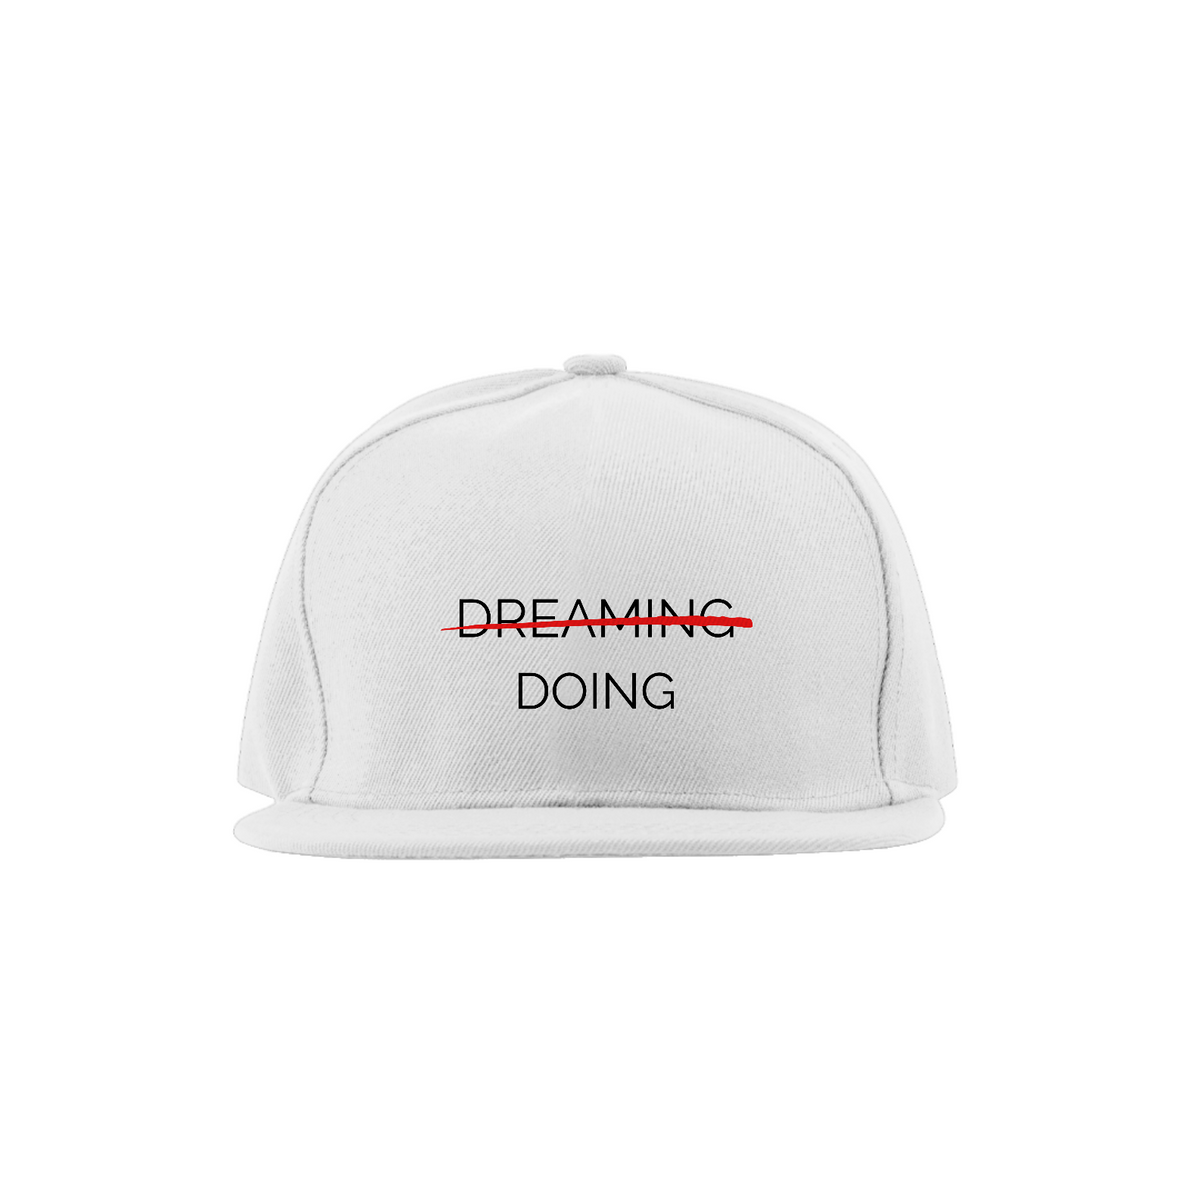 Nome do produto: Dreaming - Doing | Motivação | Aba Reta